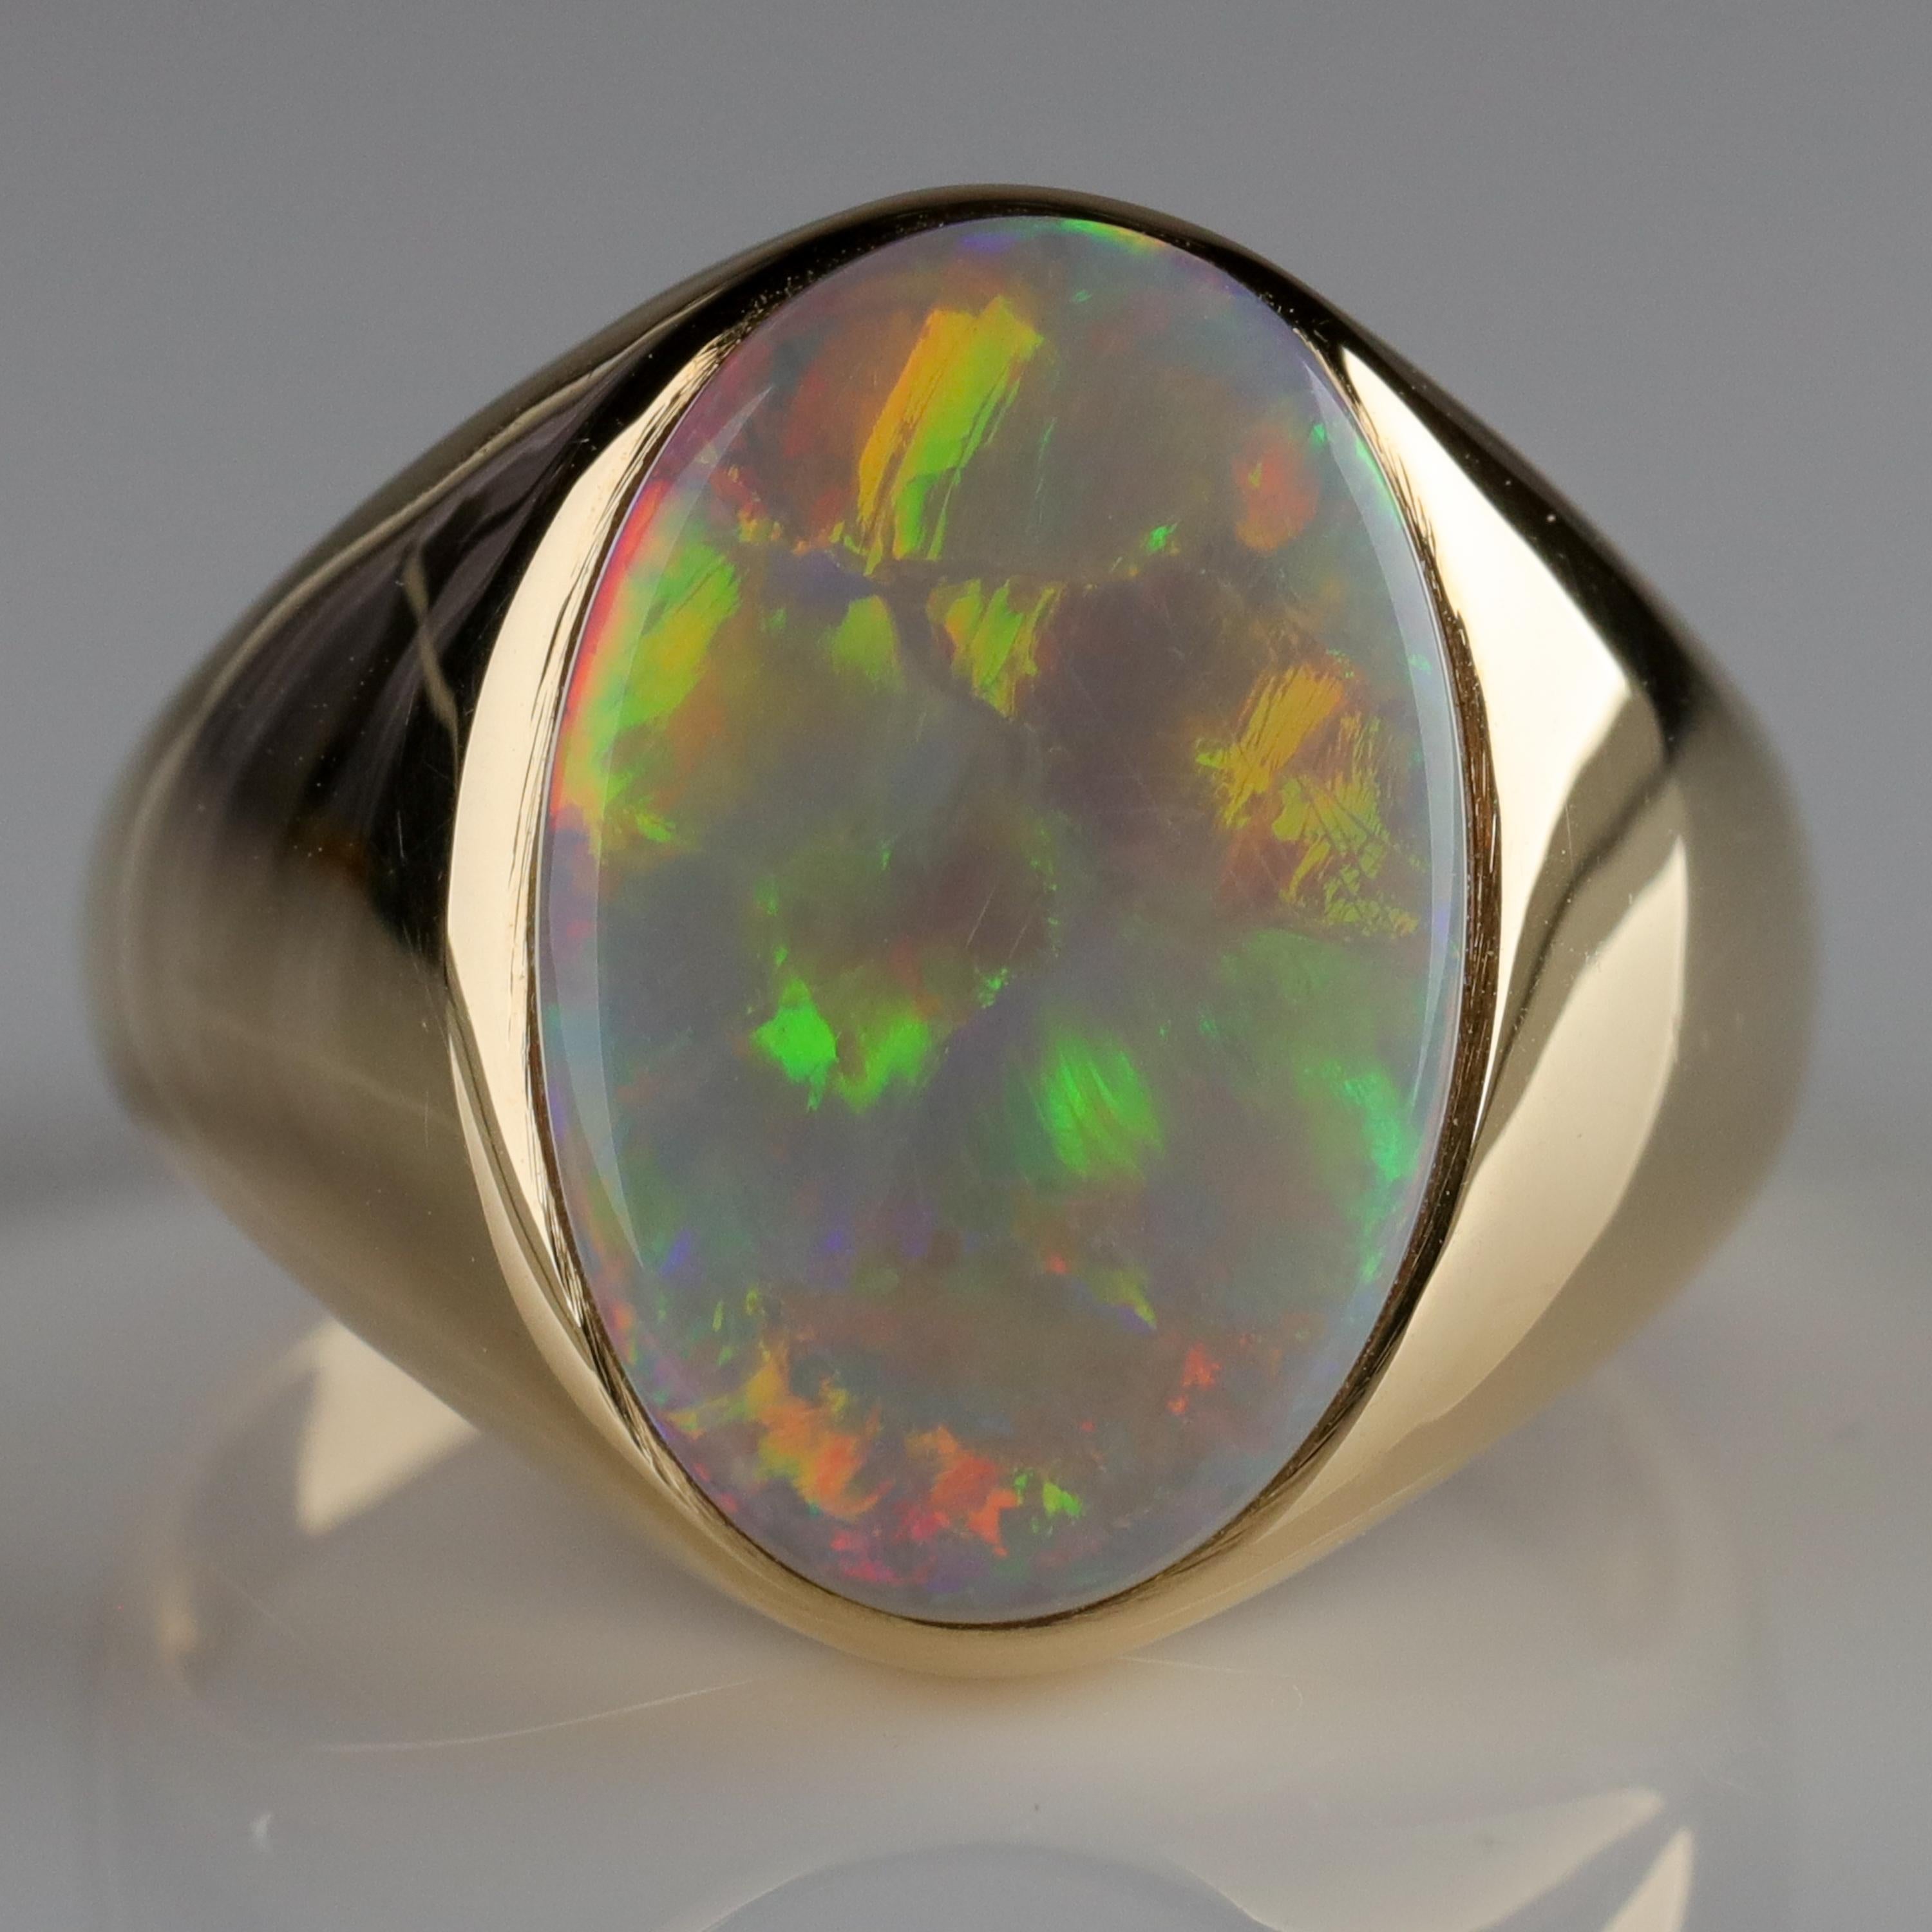 Women's or Men's Men's Australian White Opal Ring with Full Spectrum Broad Flash